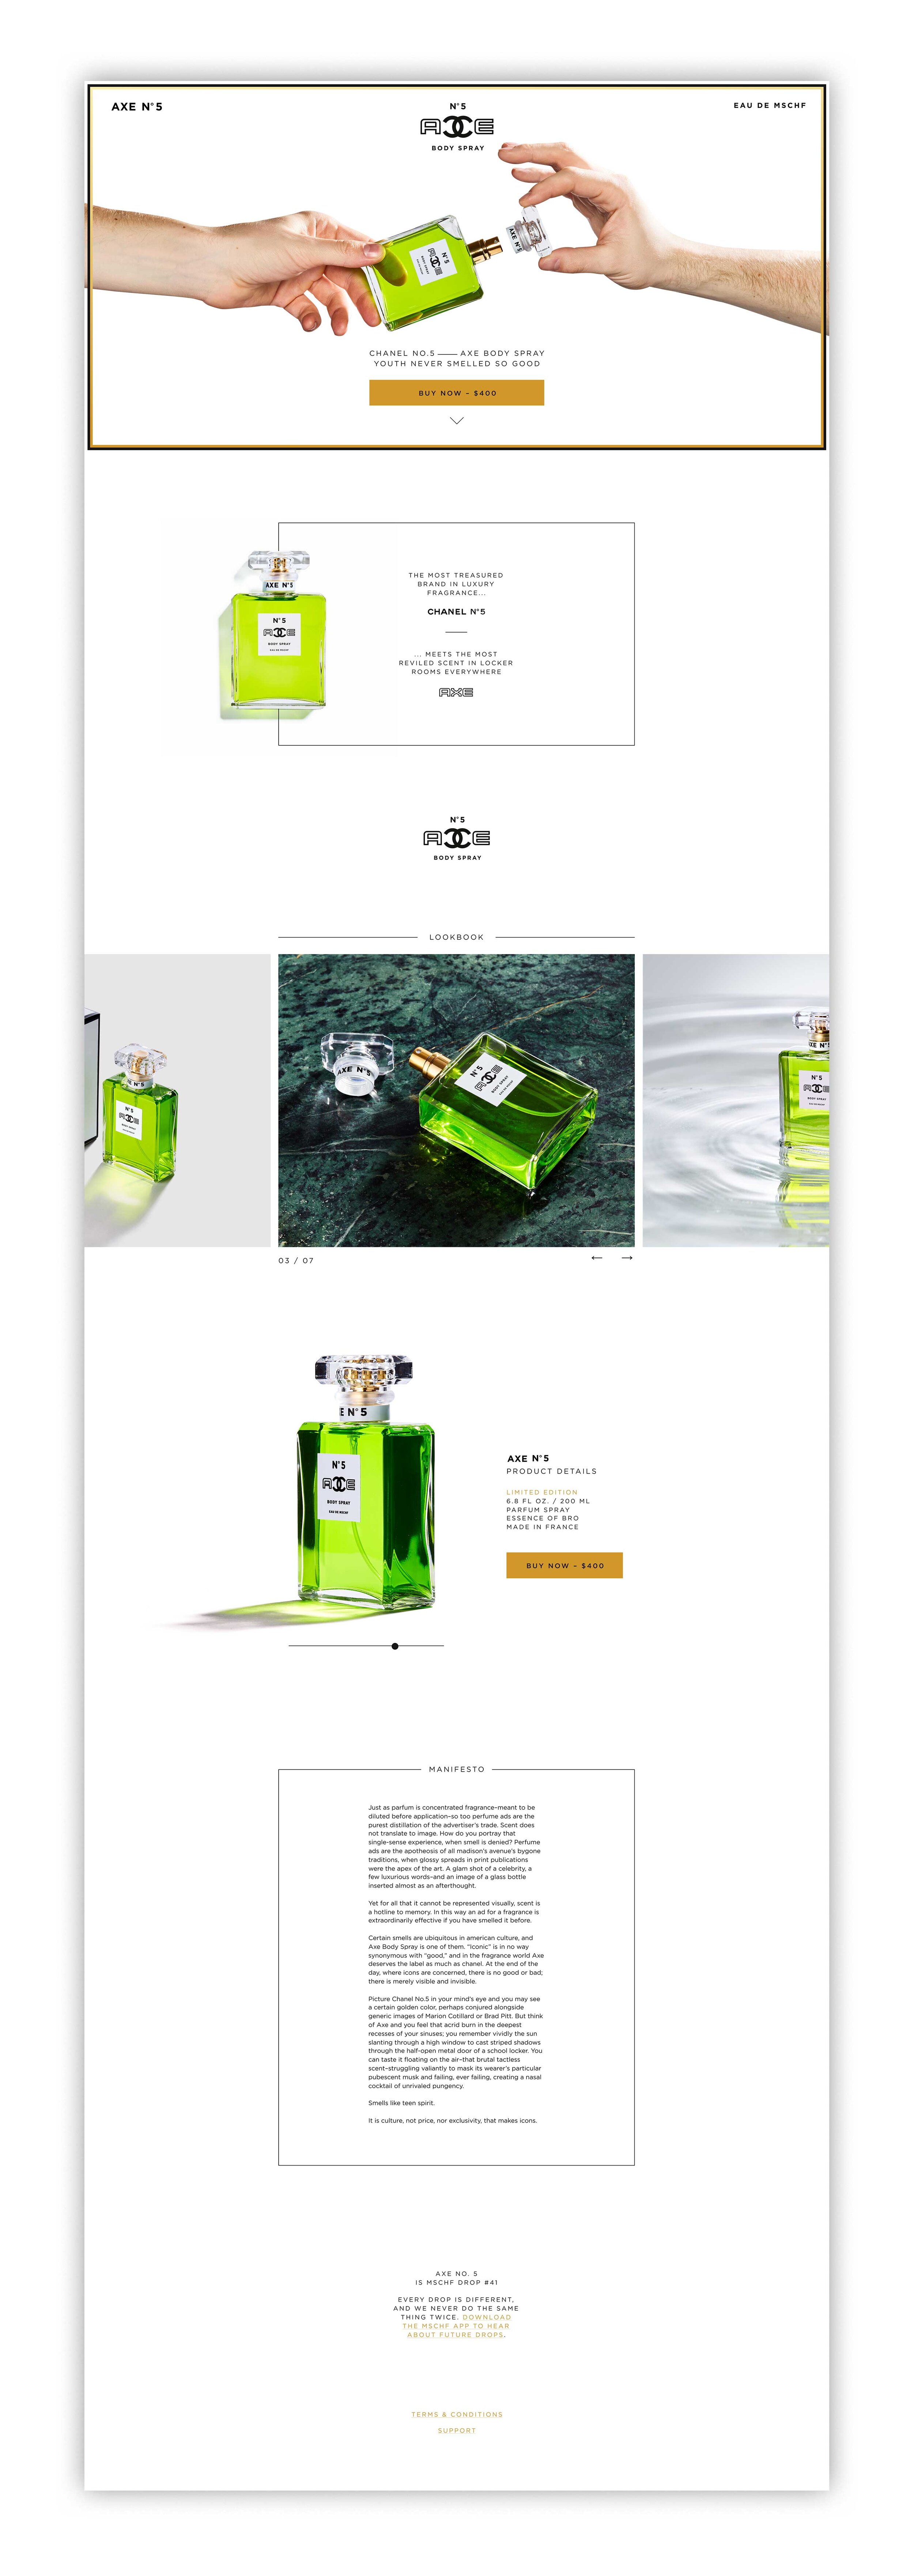 MSCHF No. 5 Axe Fragrance Release